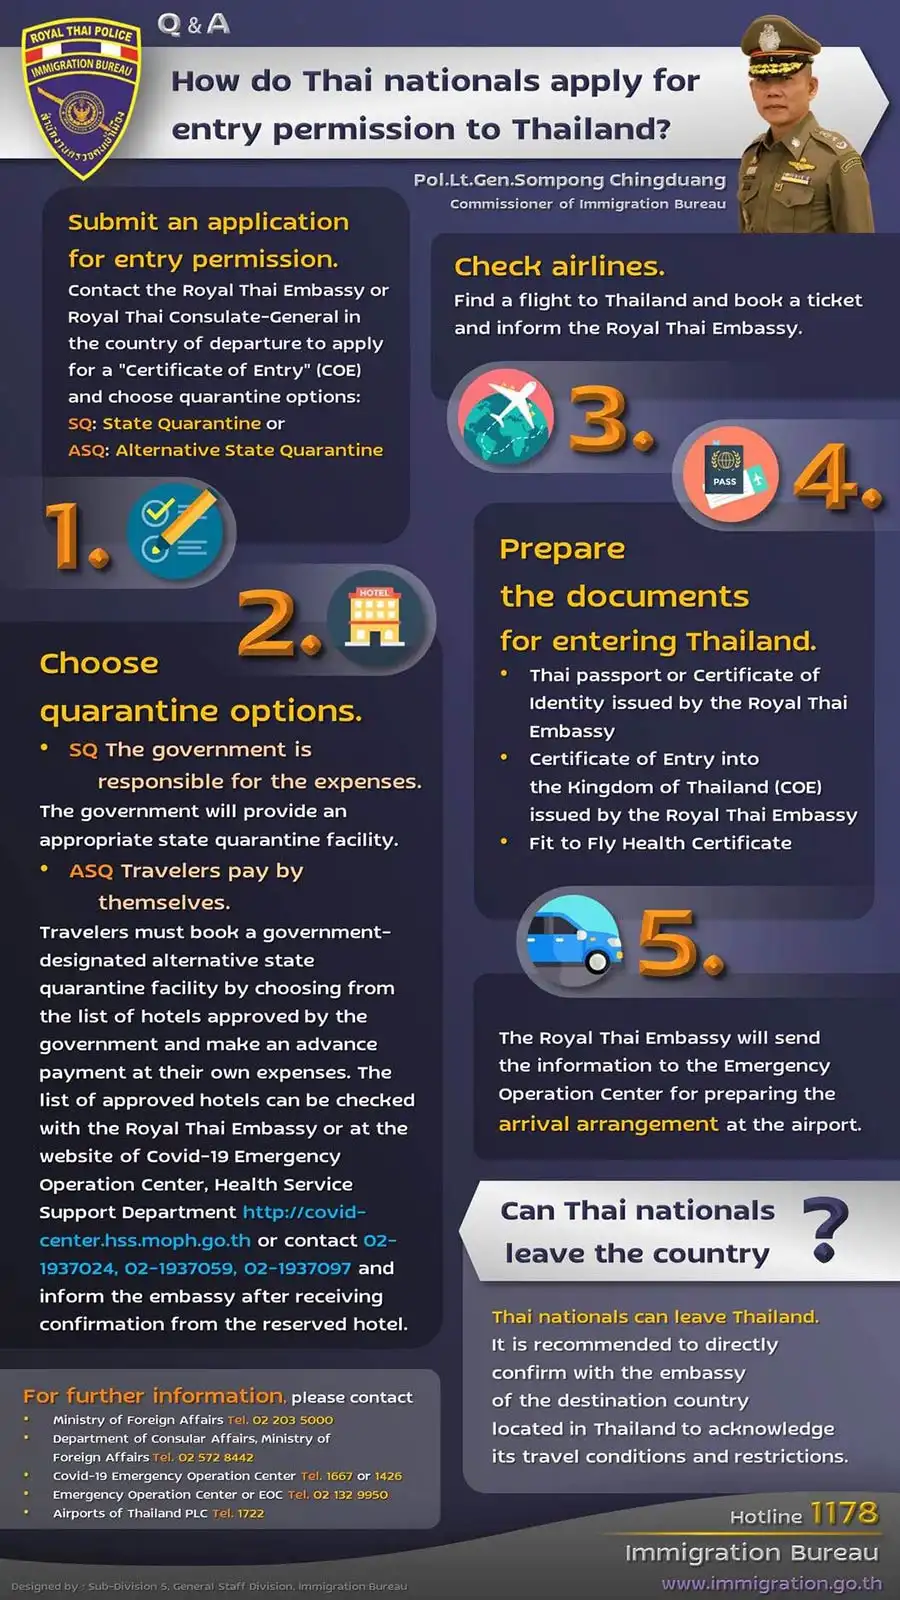  คนไทยกลับเข้าประเทศต้องทำอย่างไร สำนักงานตรวจคนเข้าเมืองมีคำตอบ